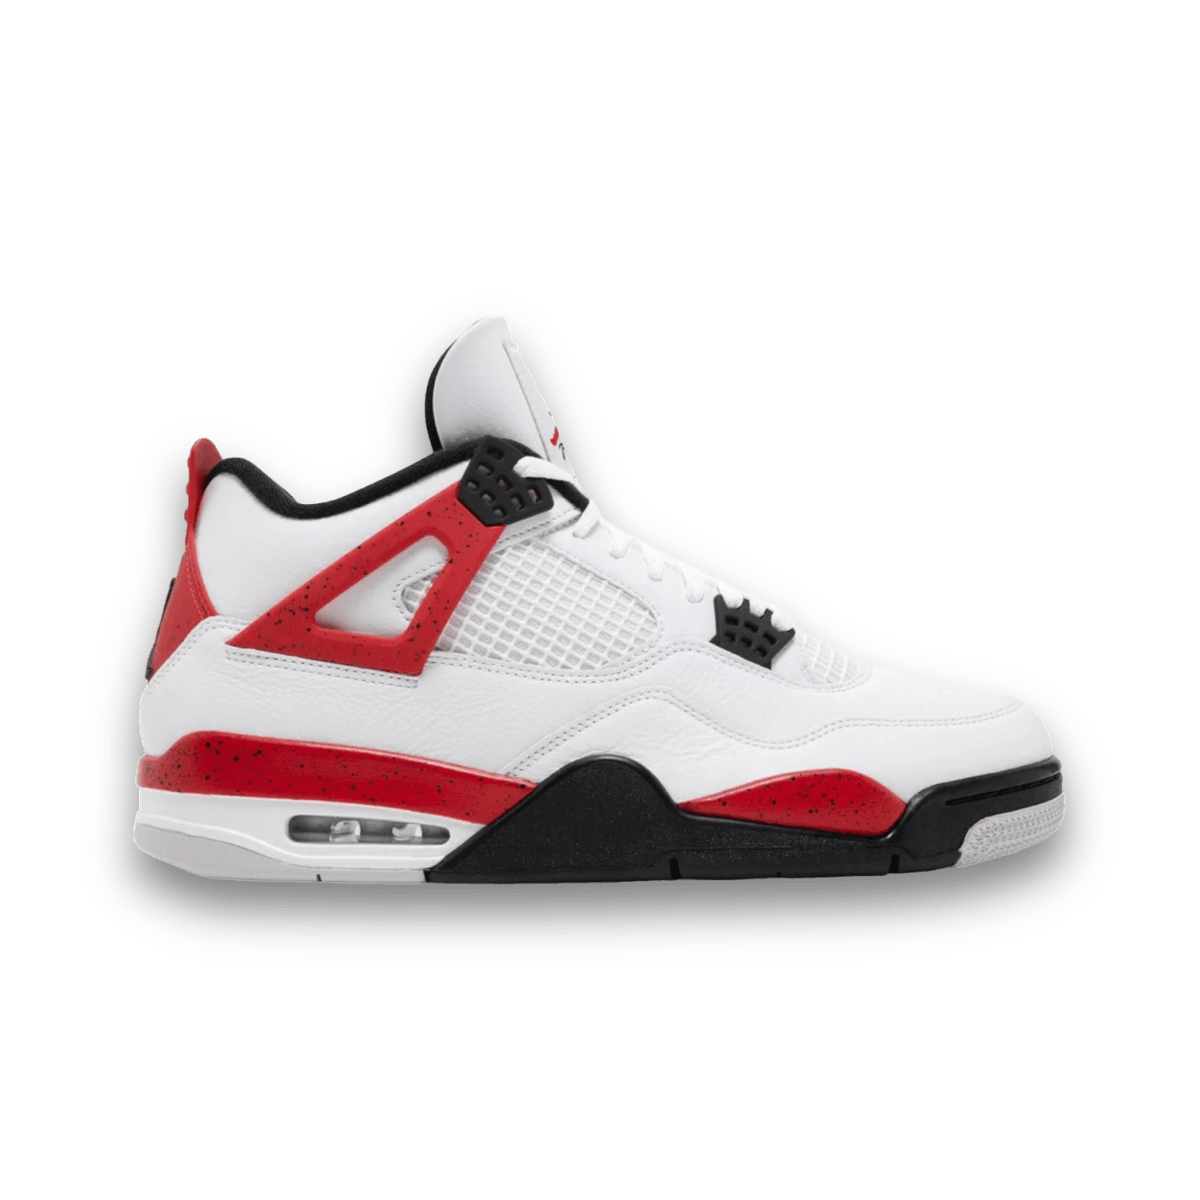 Air Jordan 4 Retro 'Red Cement' - Grade School - Mid Sneaker - Jawns on Fire Sneakers & Streetwear